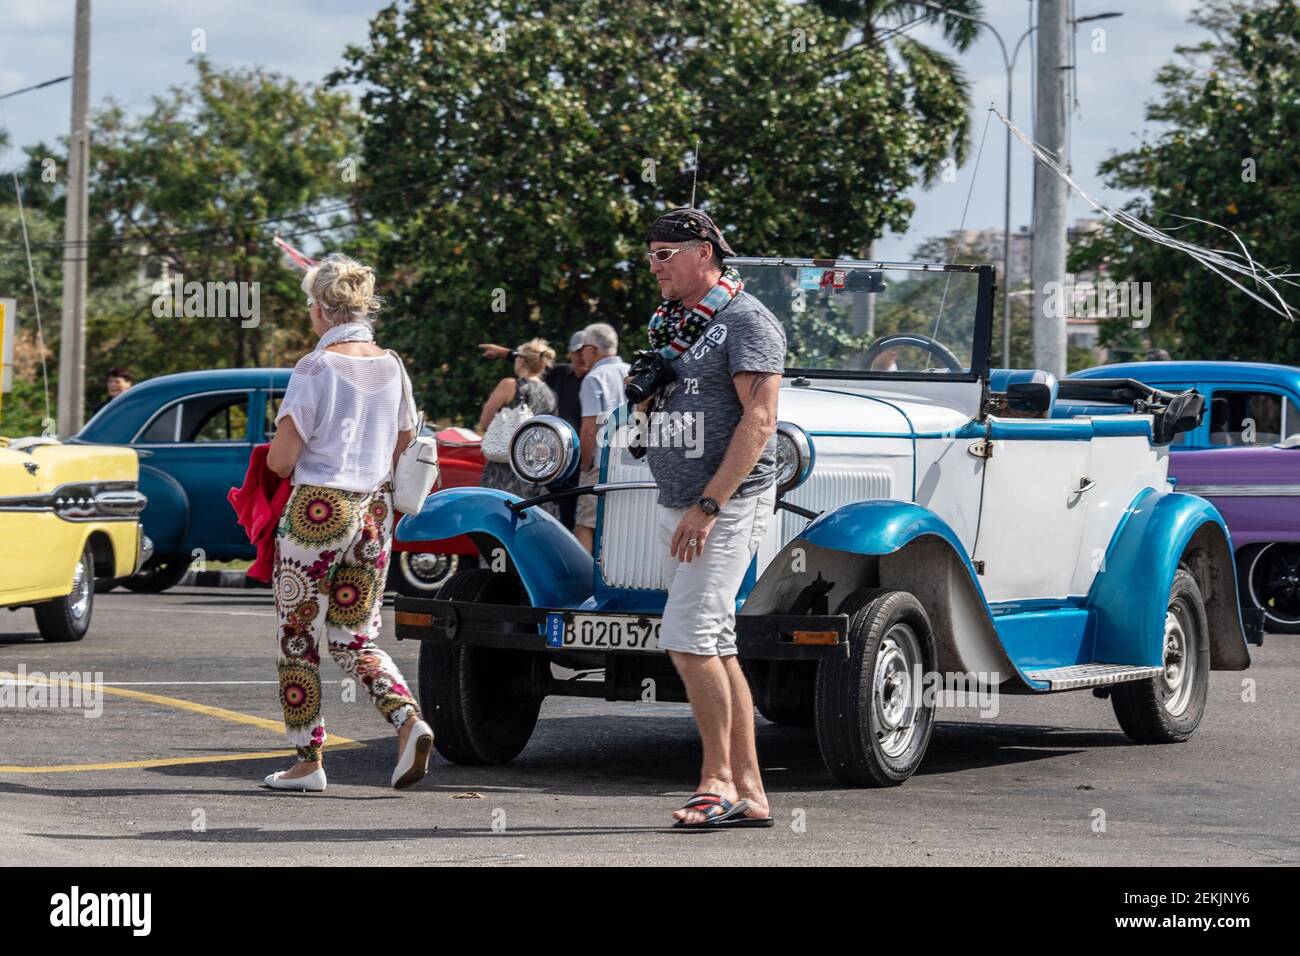 Touristes étrangers voiture vintage, la Havane, Cuba, 2017 Banque D'Images